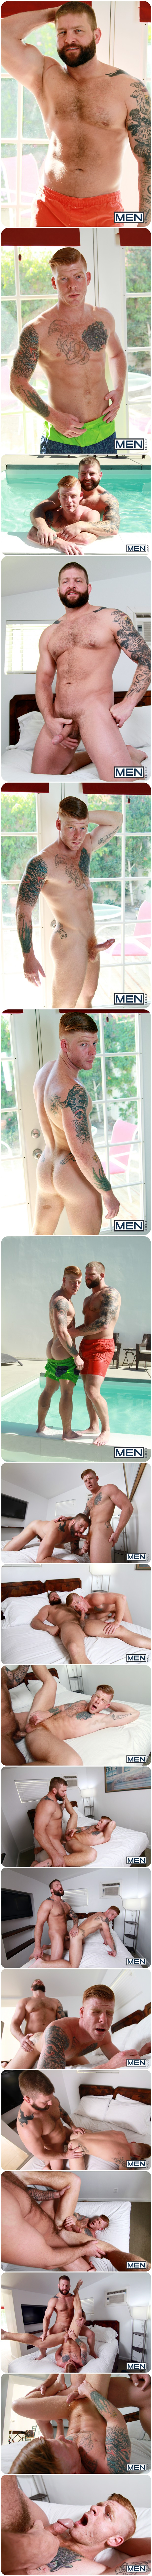 Str8 To Gay, Men.com, Bennett Anthony, Colby Jansen